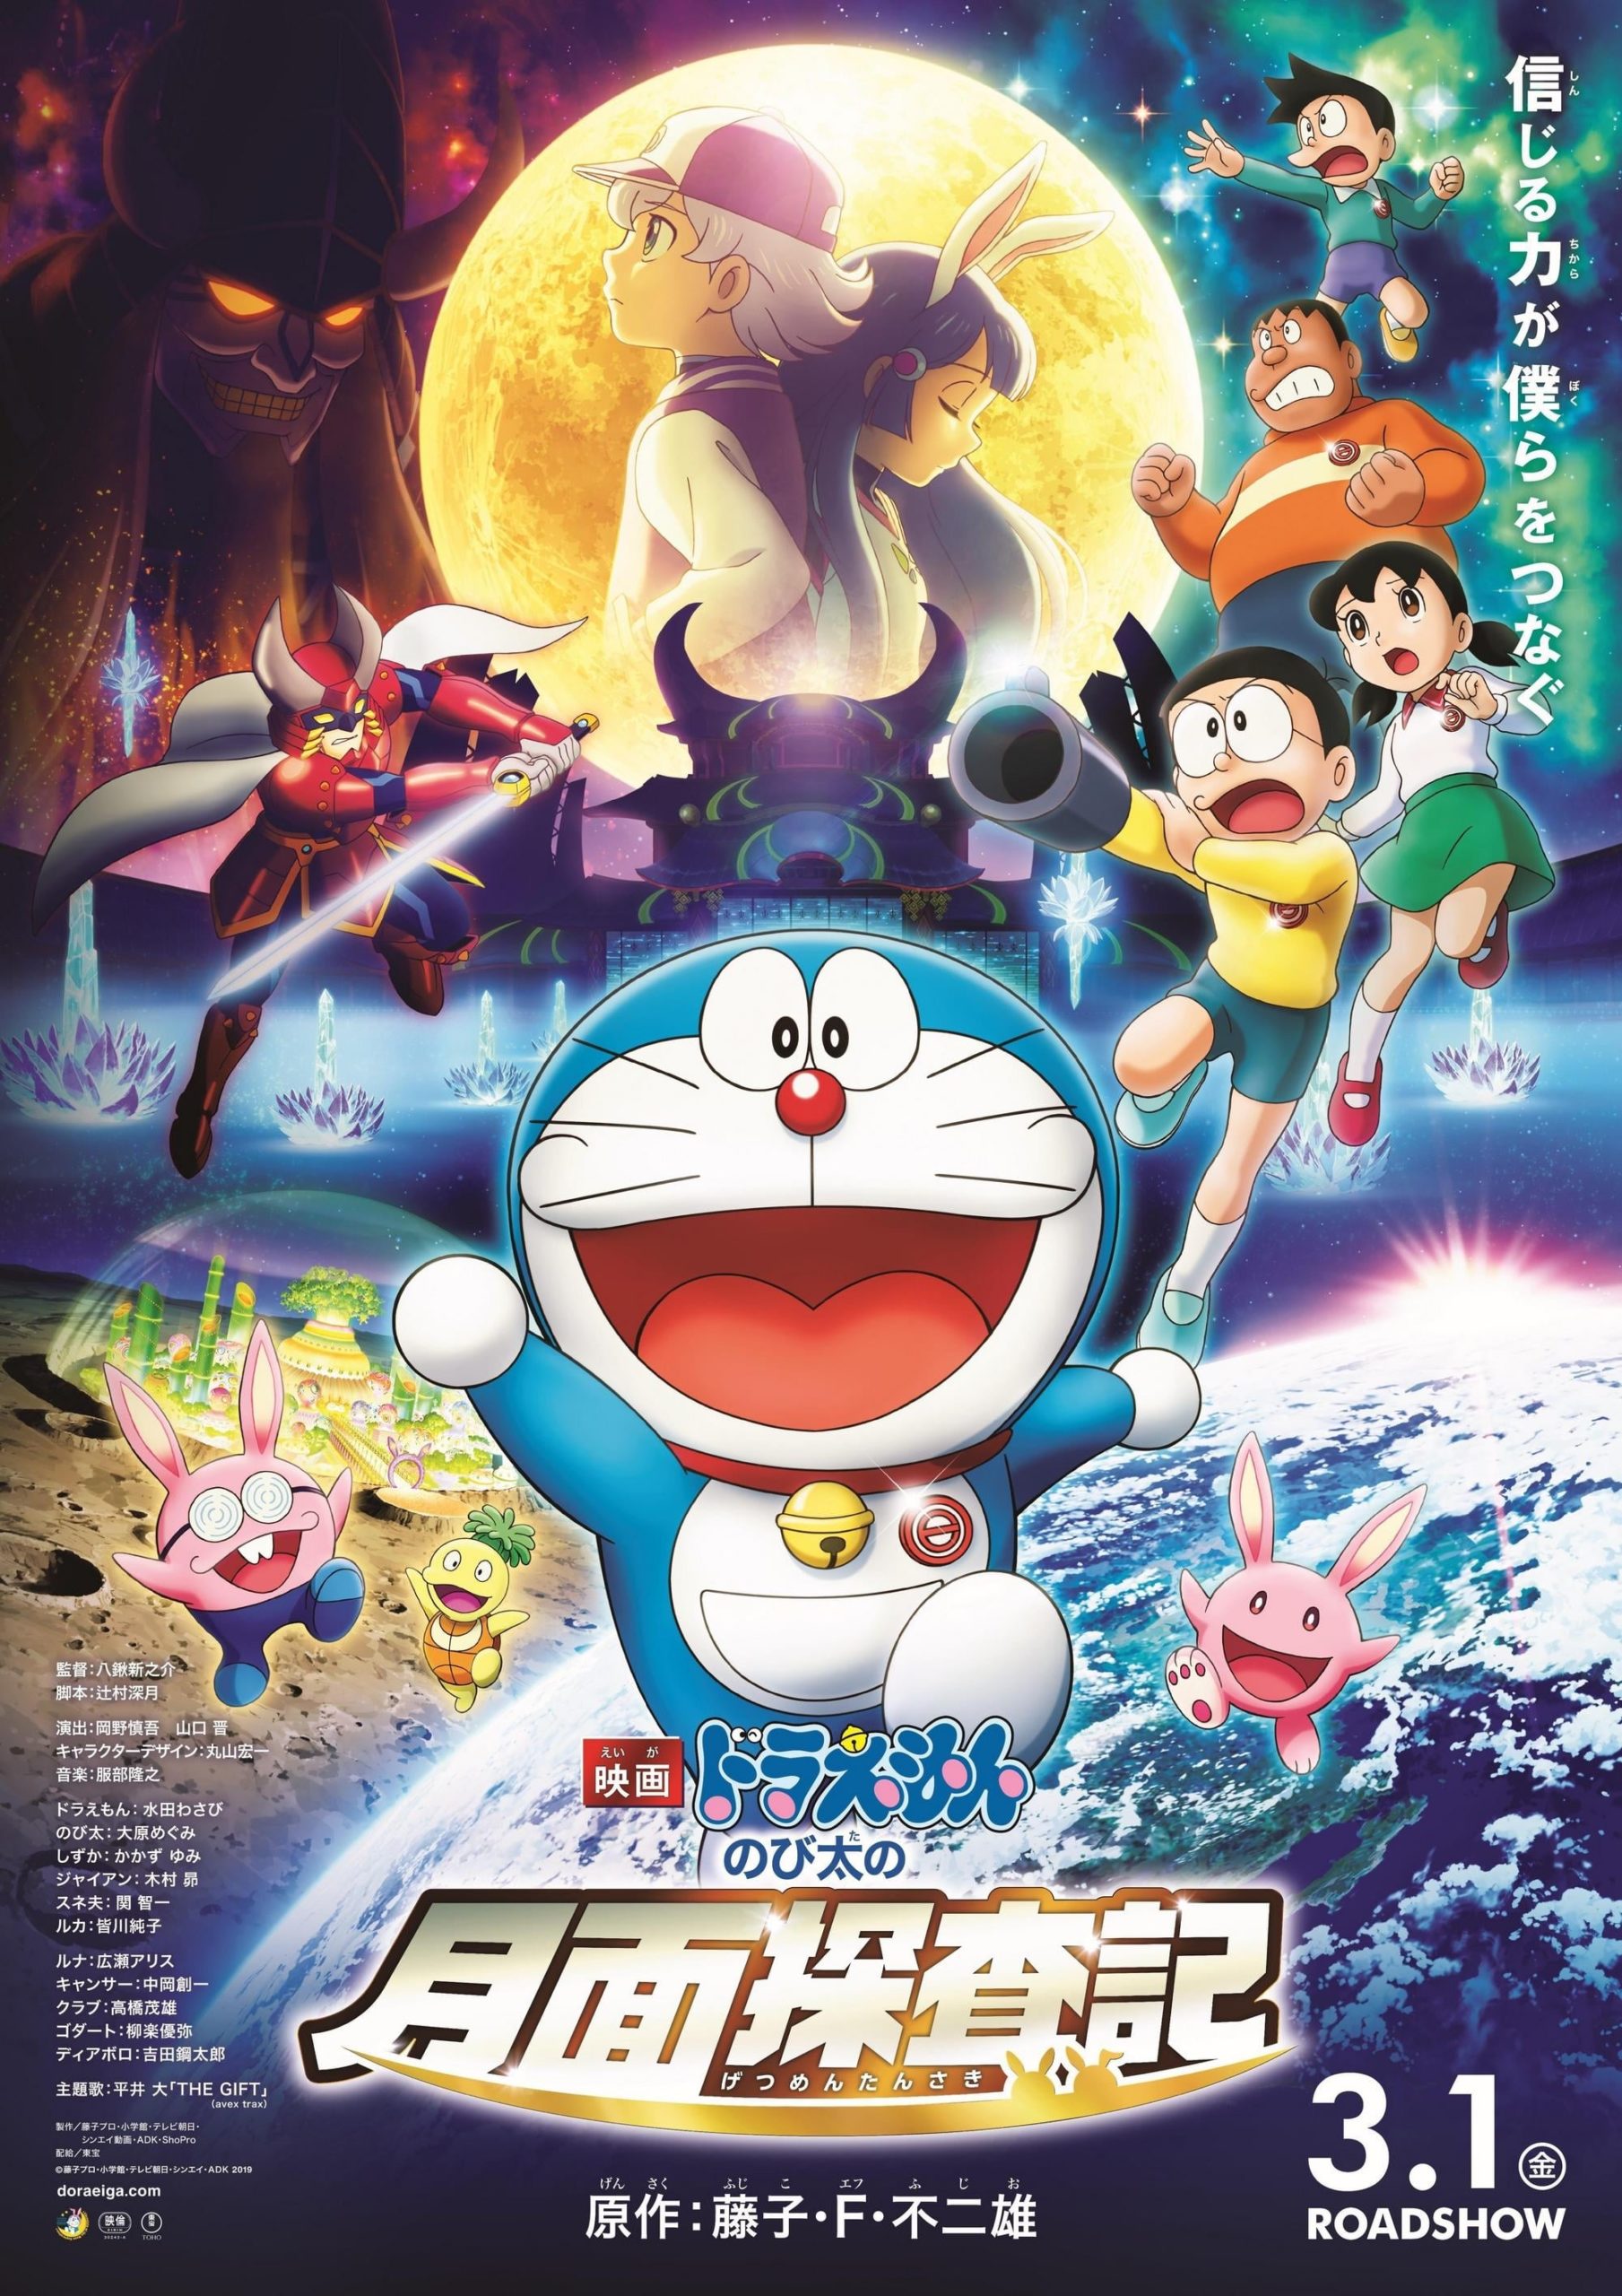 ดูหนังออนไลน์ฟรี ดูหนังใหม่ Doraemon The Movie (2019)